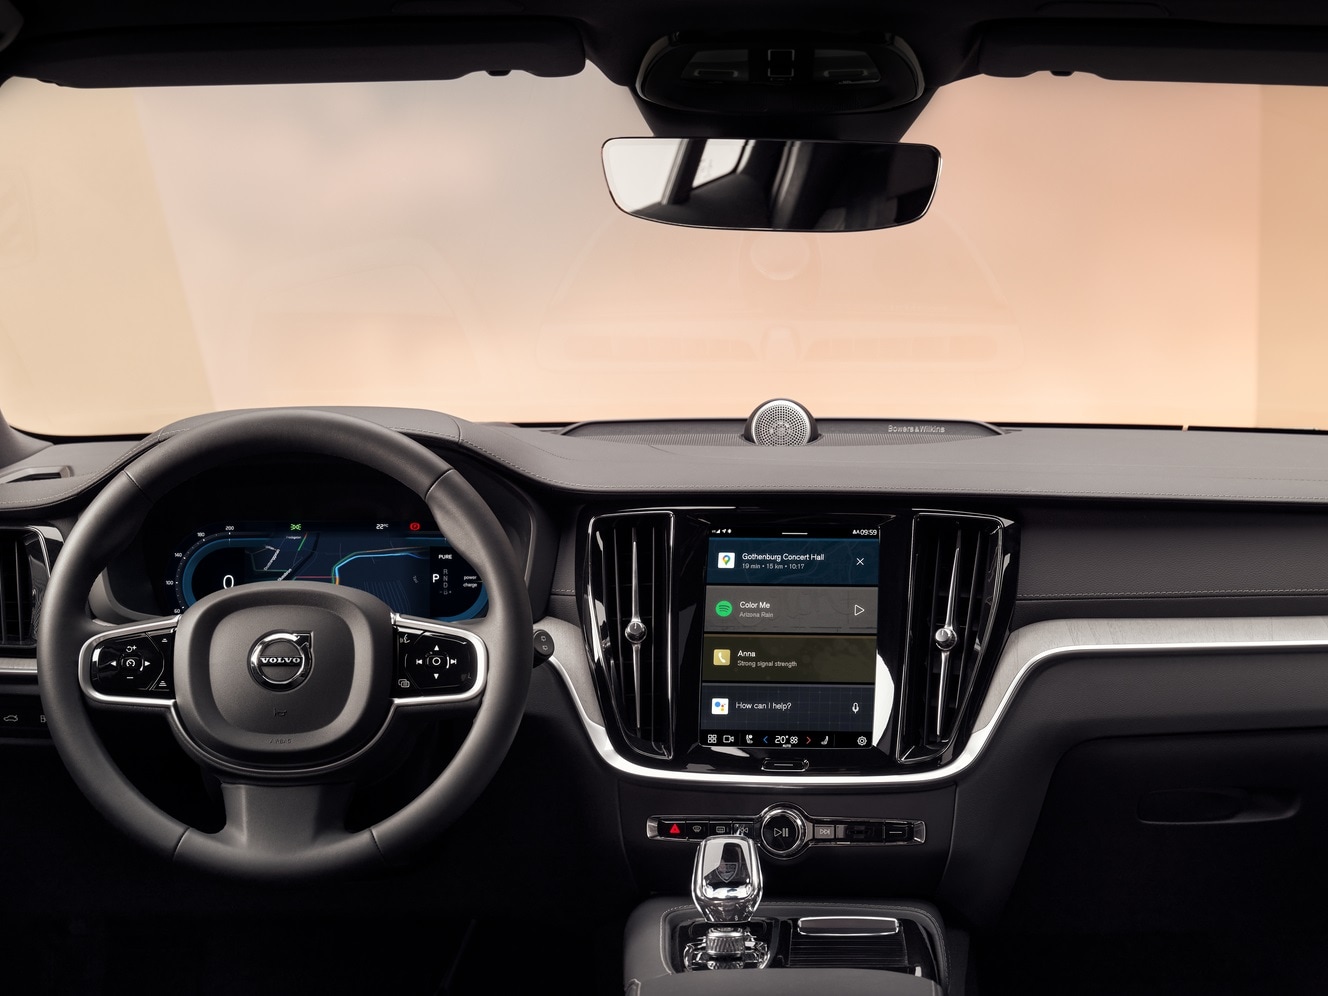 Console centrale d'un break Volvo montrant le système d'information et de divertissement avec Google intégré.